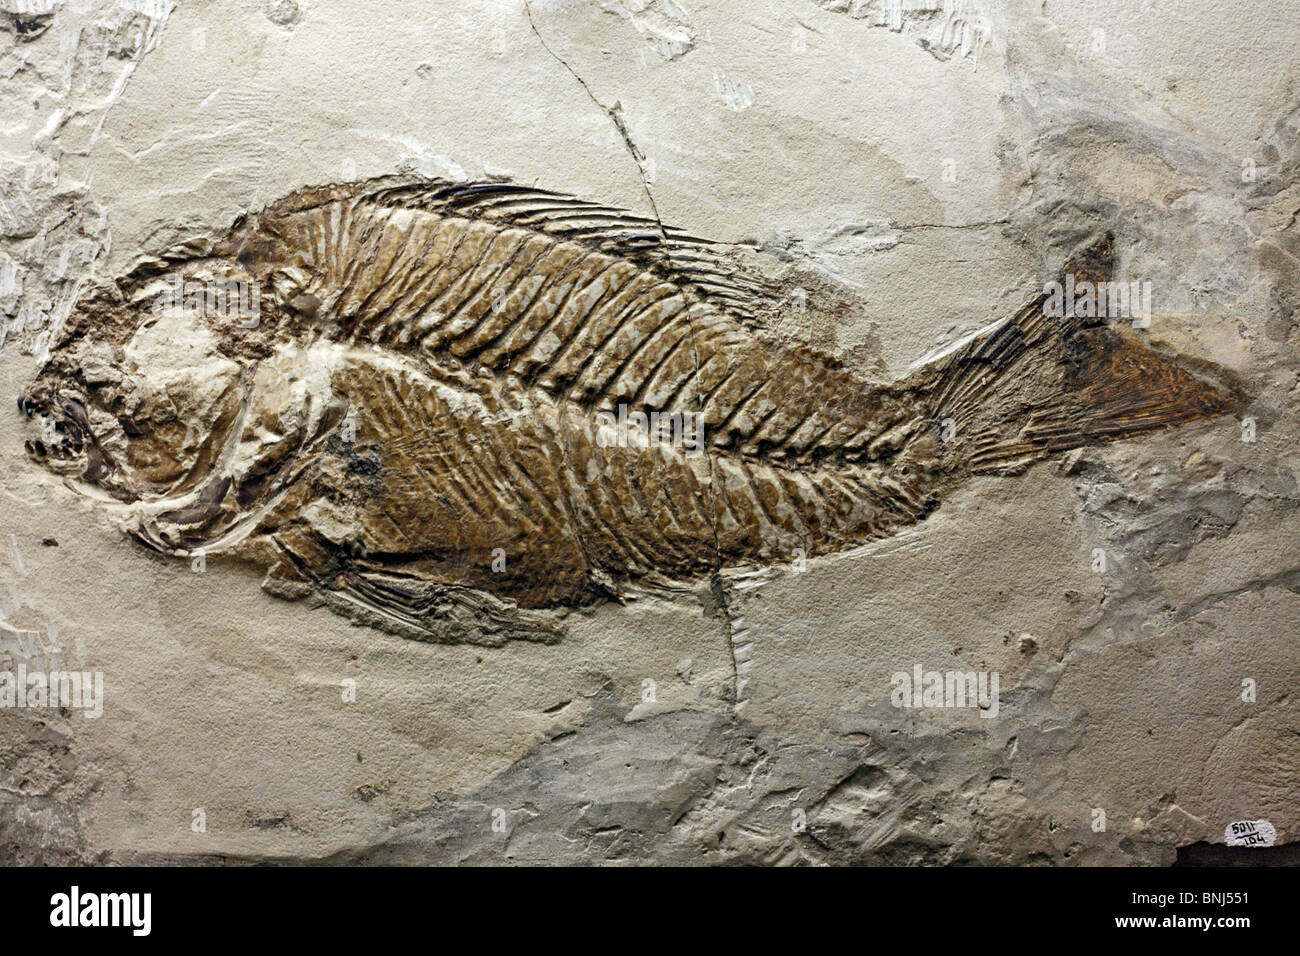 Colore museo di paleontologia Mosca Russia fossili fossili di pesci a scheletro Sparnodus macrophthalmus ossa ossea pre storia pre Foto Stock